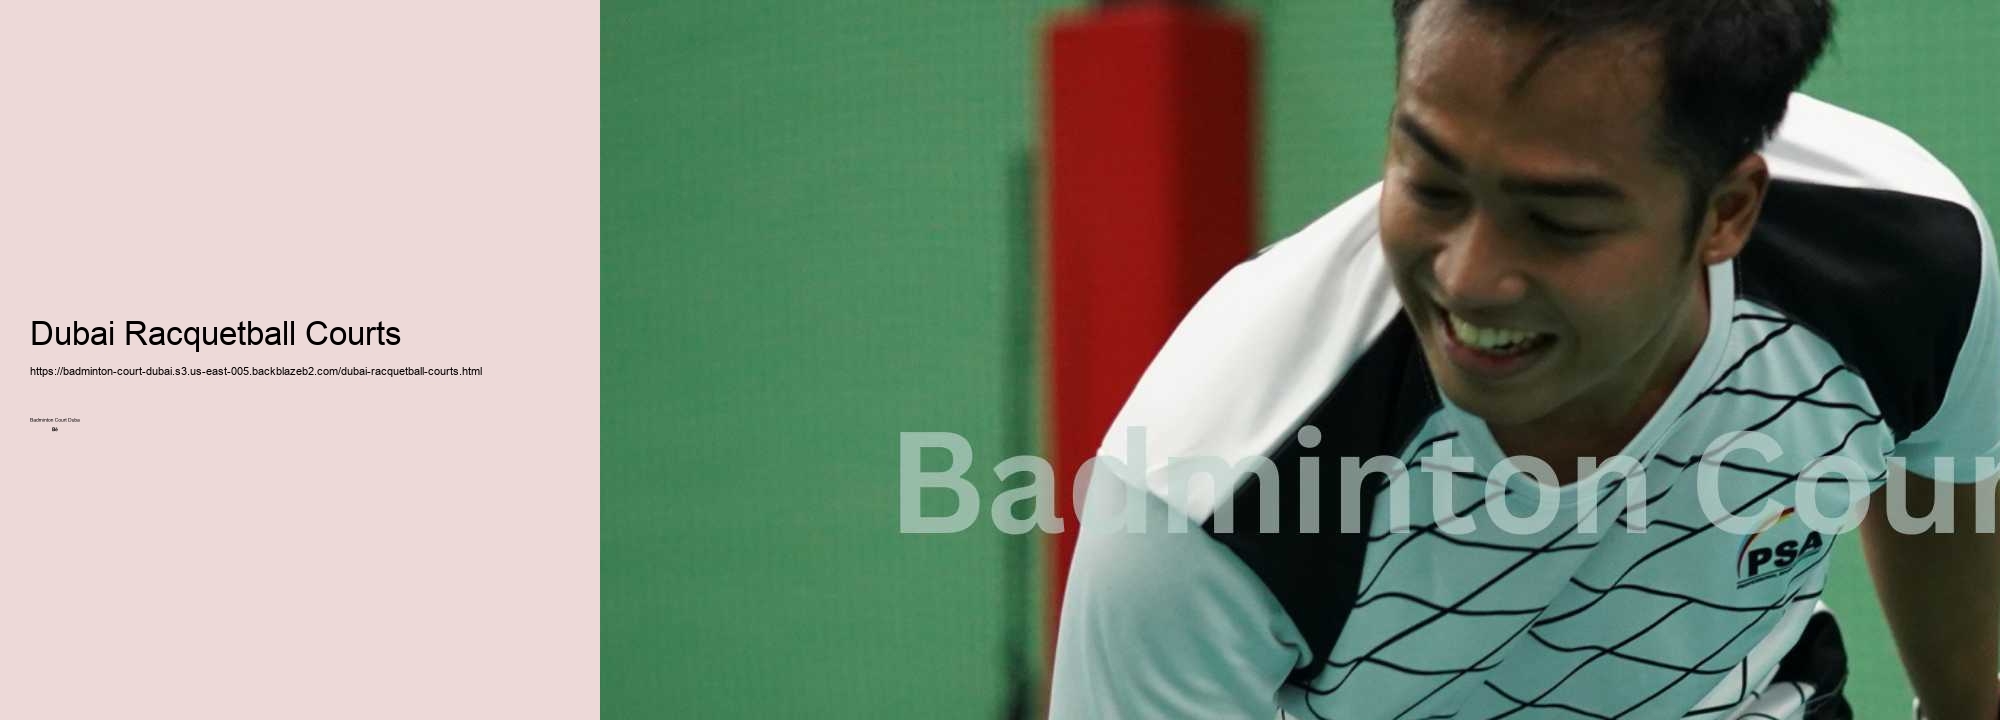 Dubai Racquetball Courts